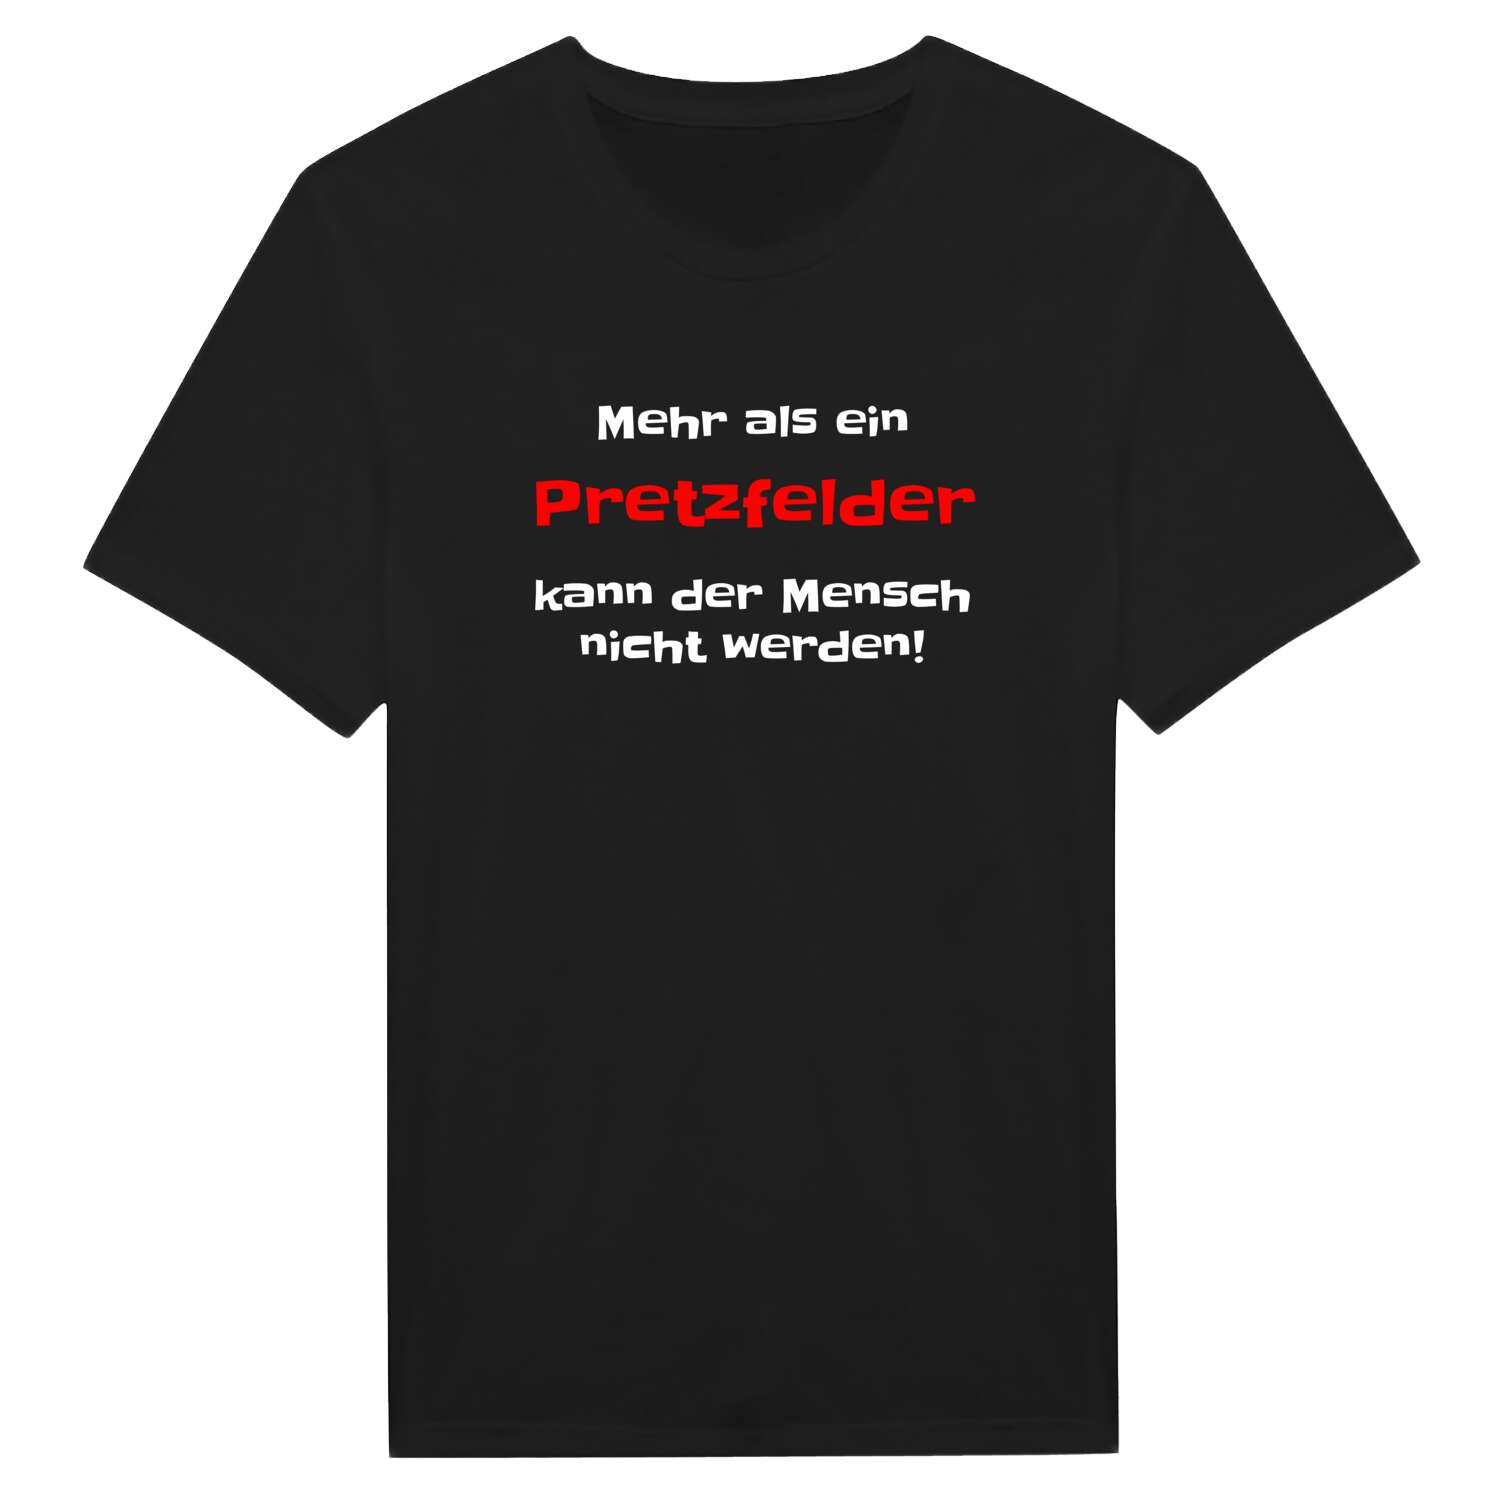 Pretzfeld T-Shirt »Mehr als ein«